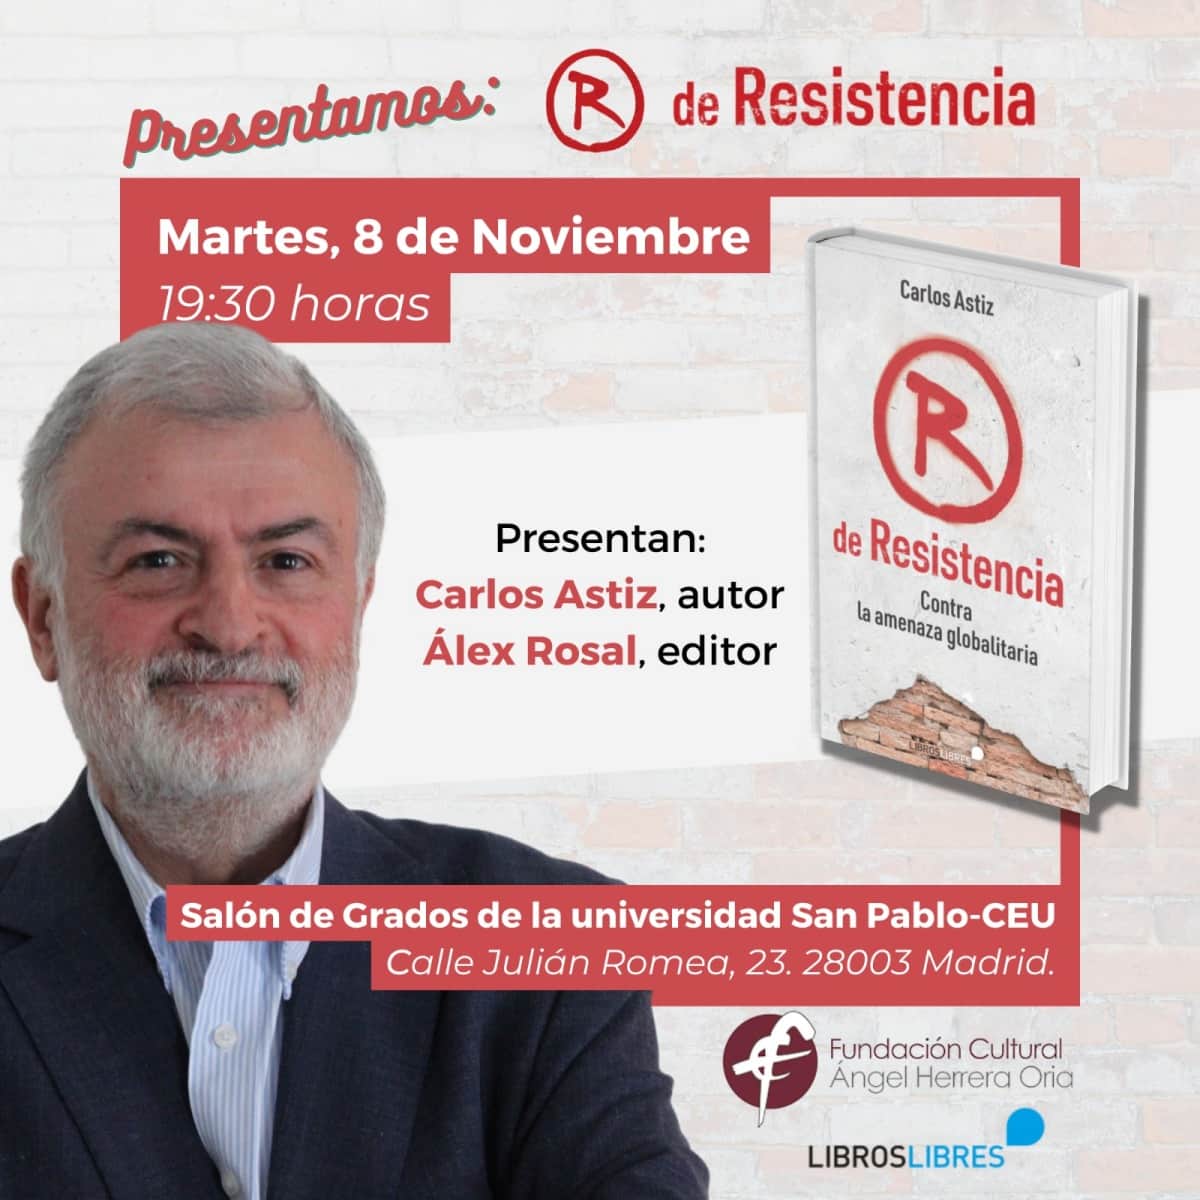 Prsentacion_R_de_Resistencia_Carlos_Astiz.